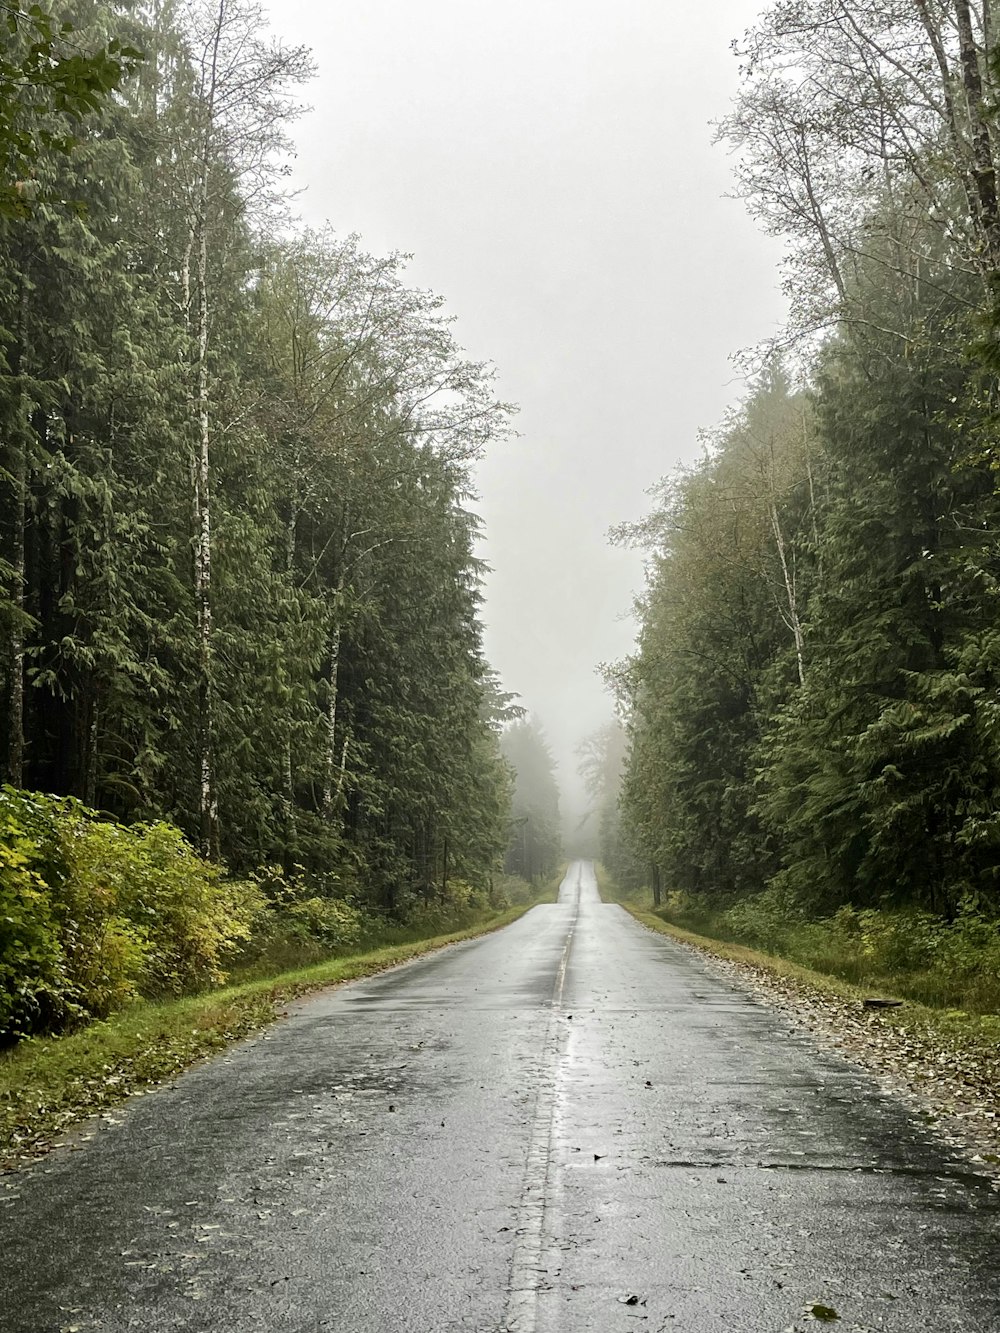 Un camino mojado en medio de un bosque